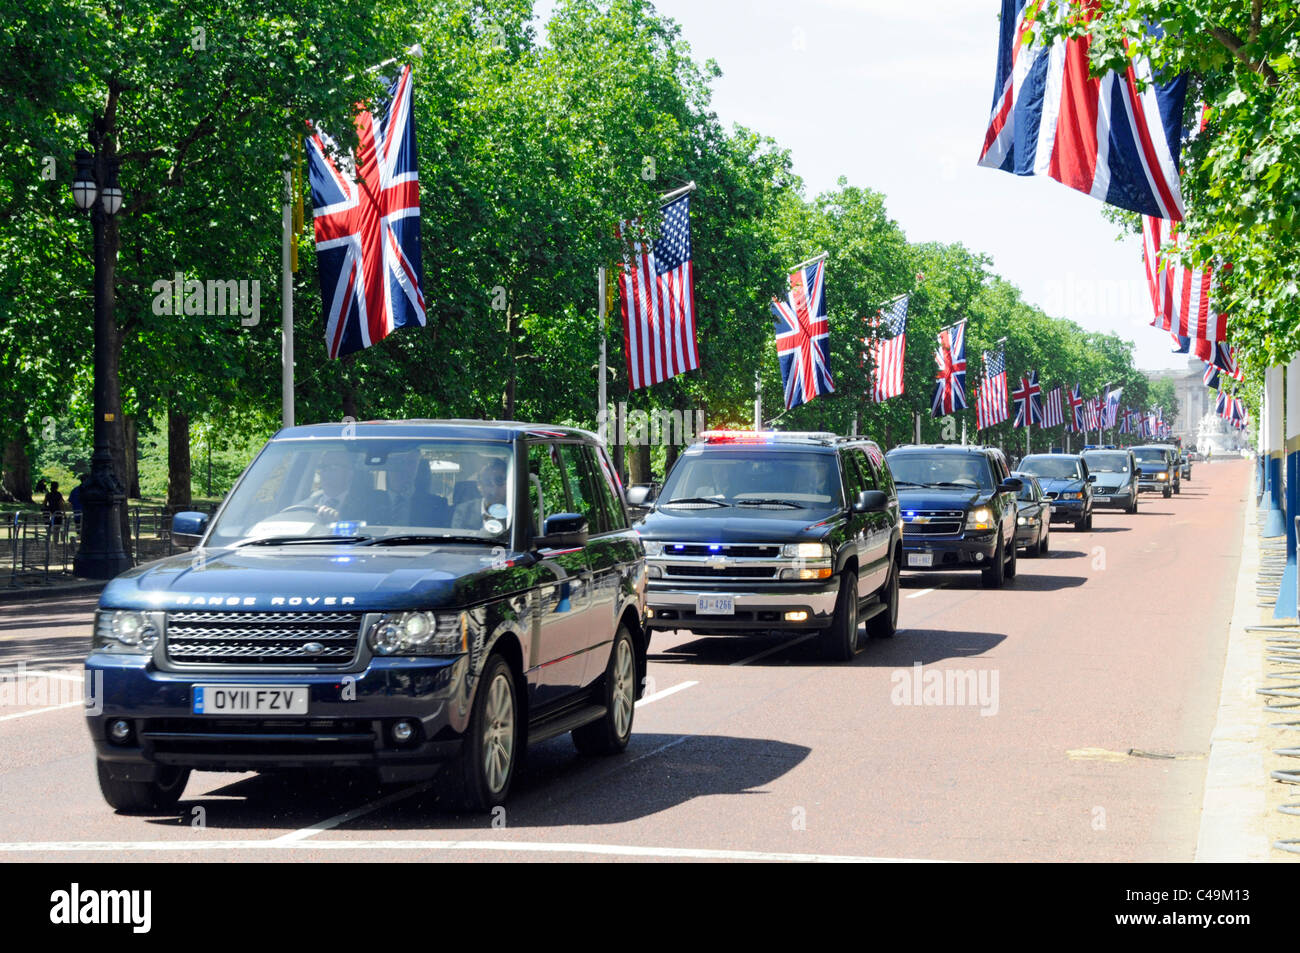 Cortège présidentielle des gardes de sécurité du Royaume-Uni et des États-Unis dans le Durant la visite du président américain Obama, le centre commercial a un drapeau de l'Union Drapeaux américains Londres Angleterre Royaume-Uni Banque D'Images